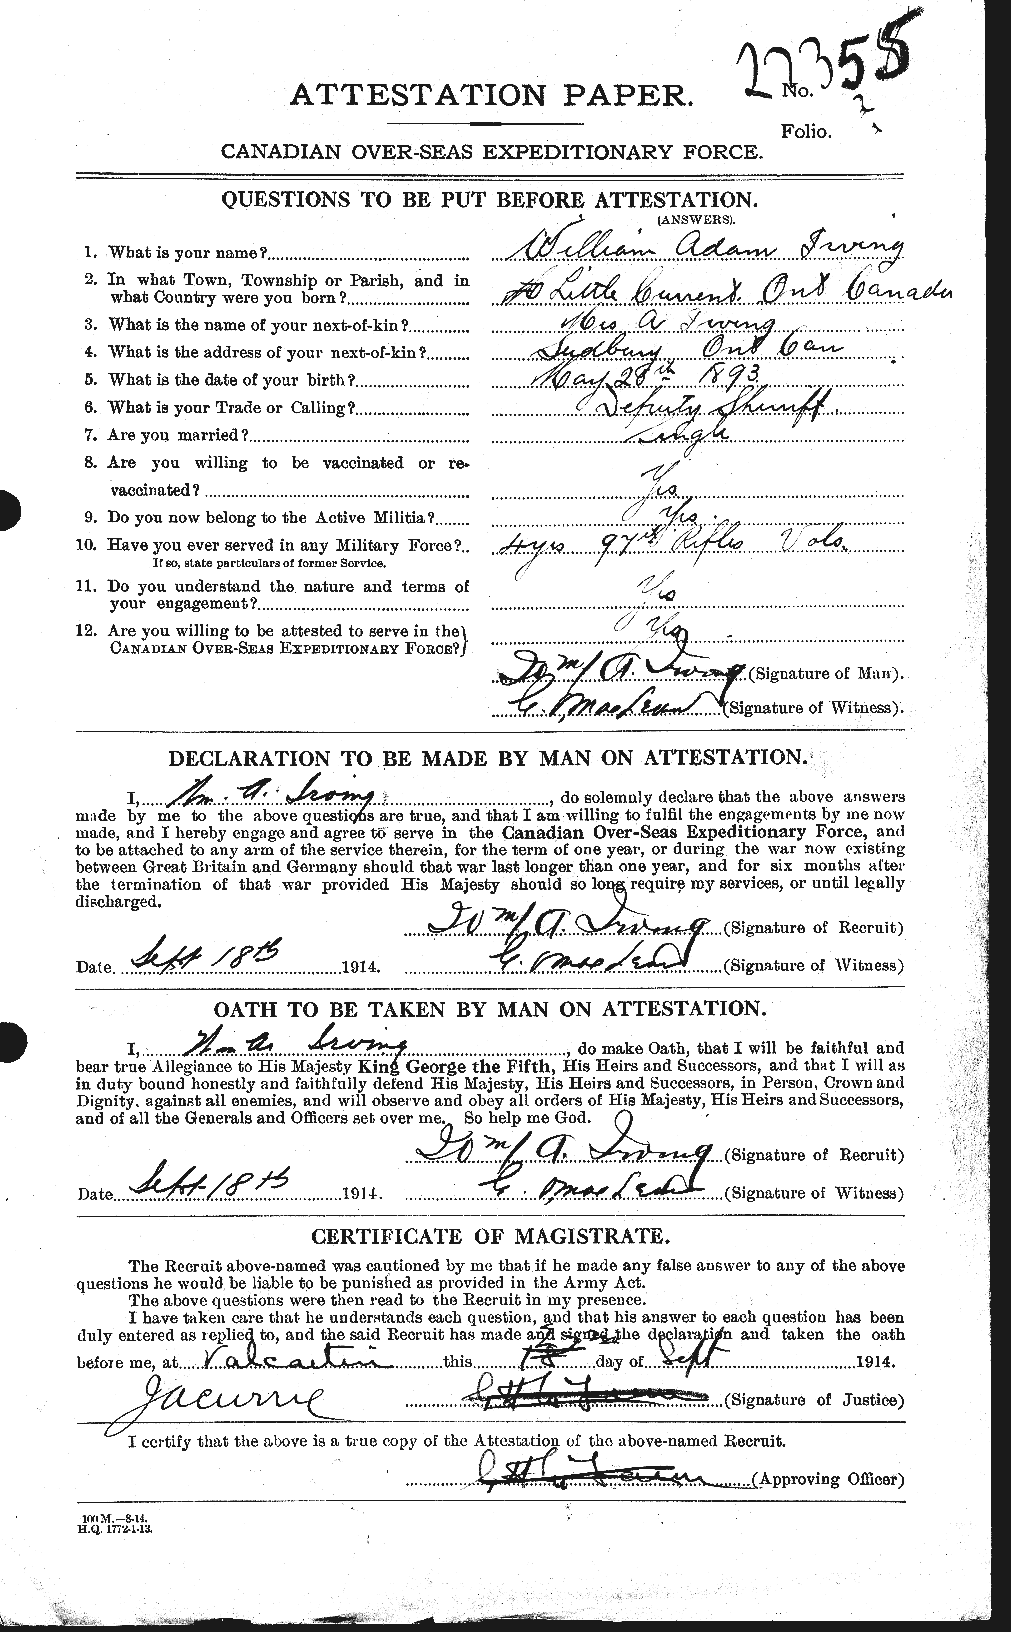 Dossiers du Personnel de la Première Guerre mondiale - CEC 412742a